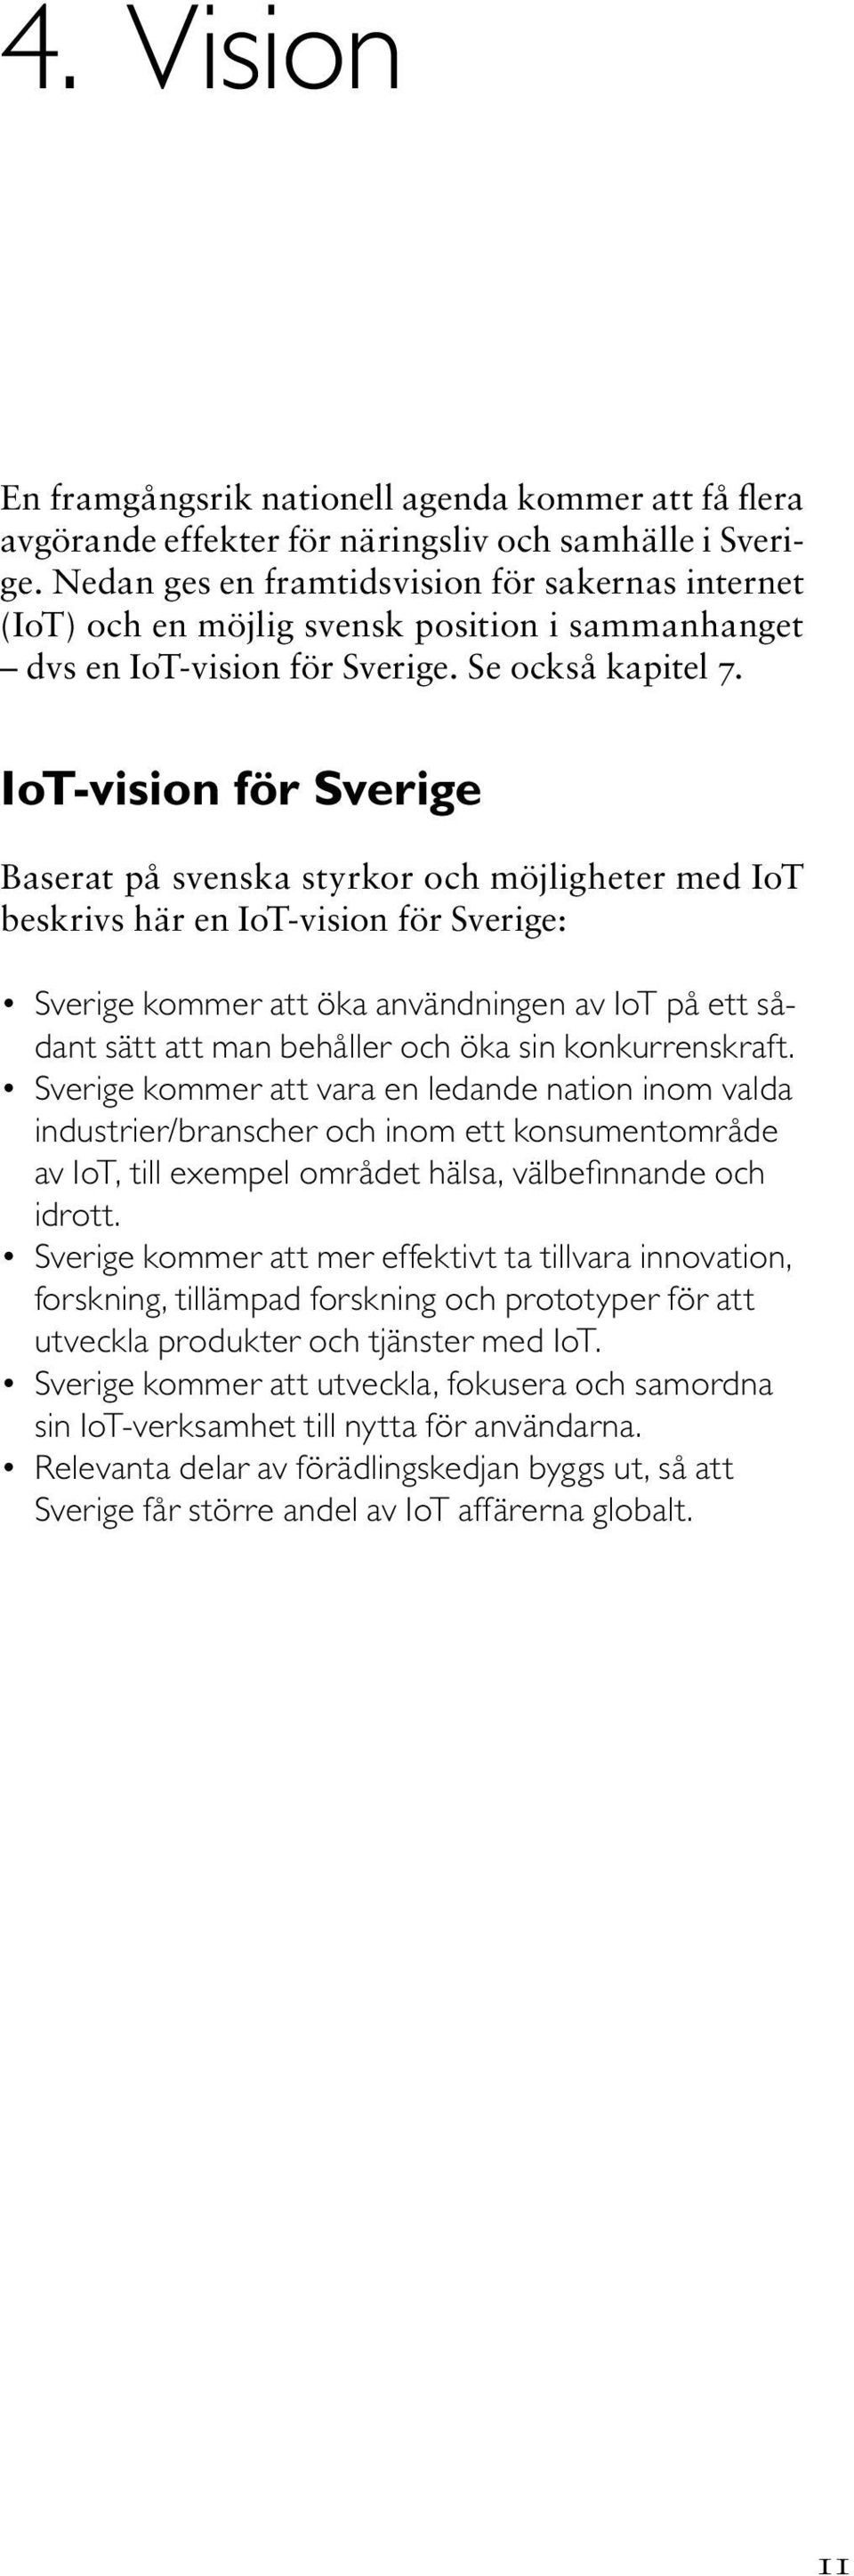 IoT-vision för Sverige Baserat på svenska styrkor och möjligheter med IoT beskrivs här en IoT-vision för Sverige: Sverige kommer att öka användningen av IoT på ett sådant sätt att man behåller och